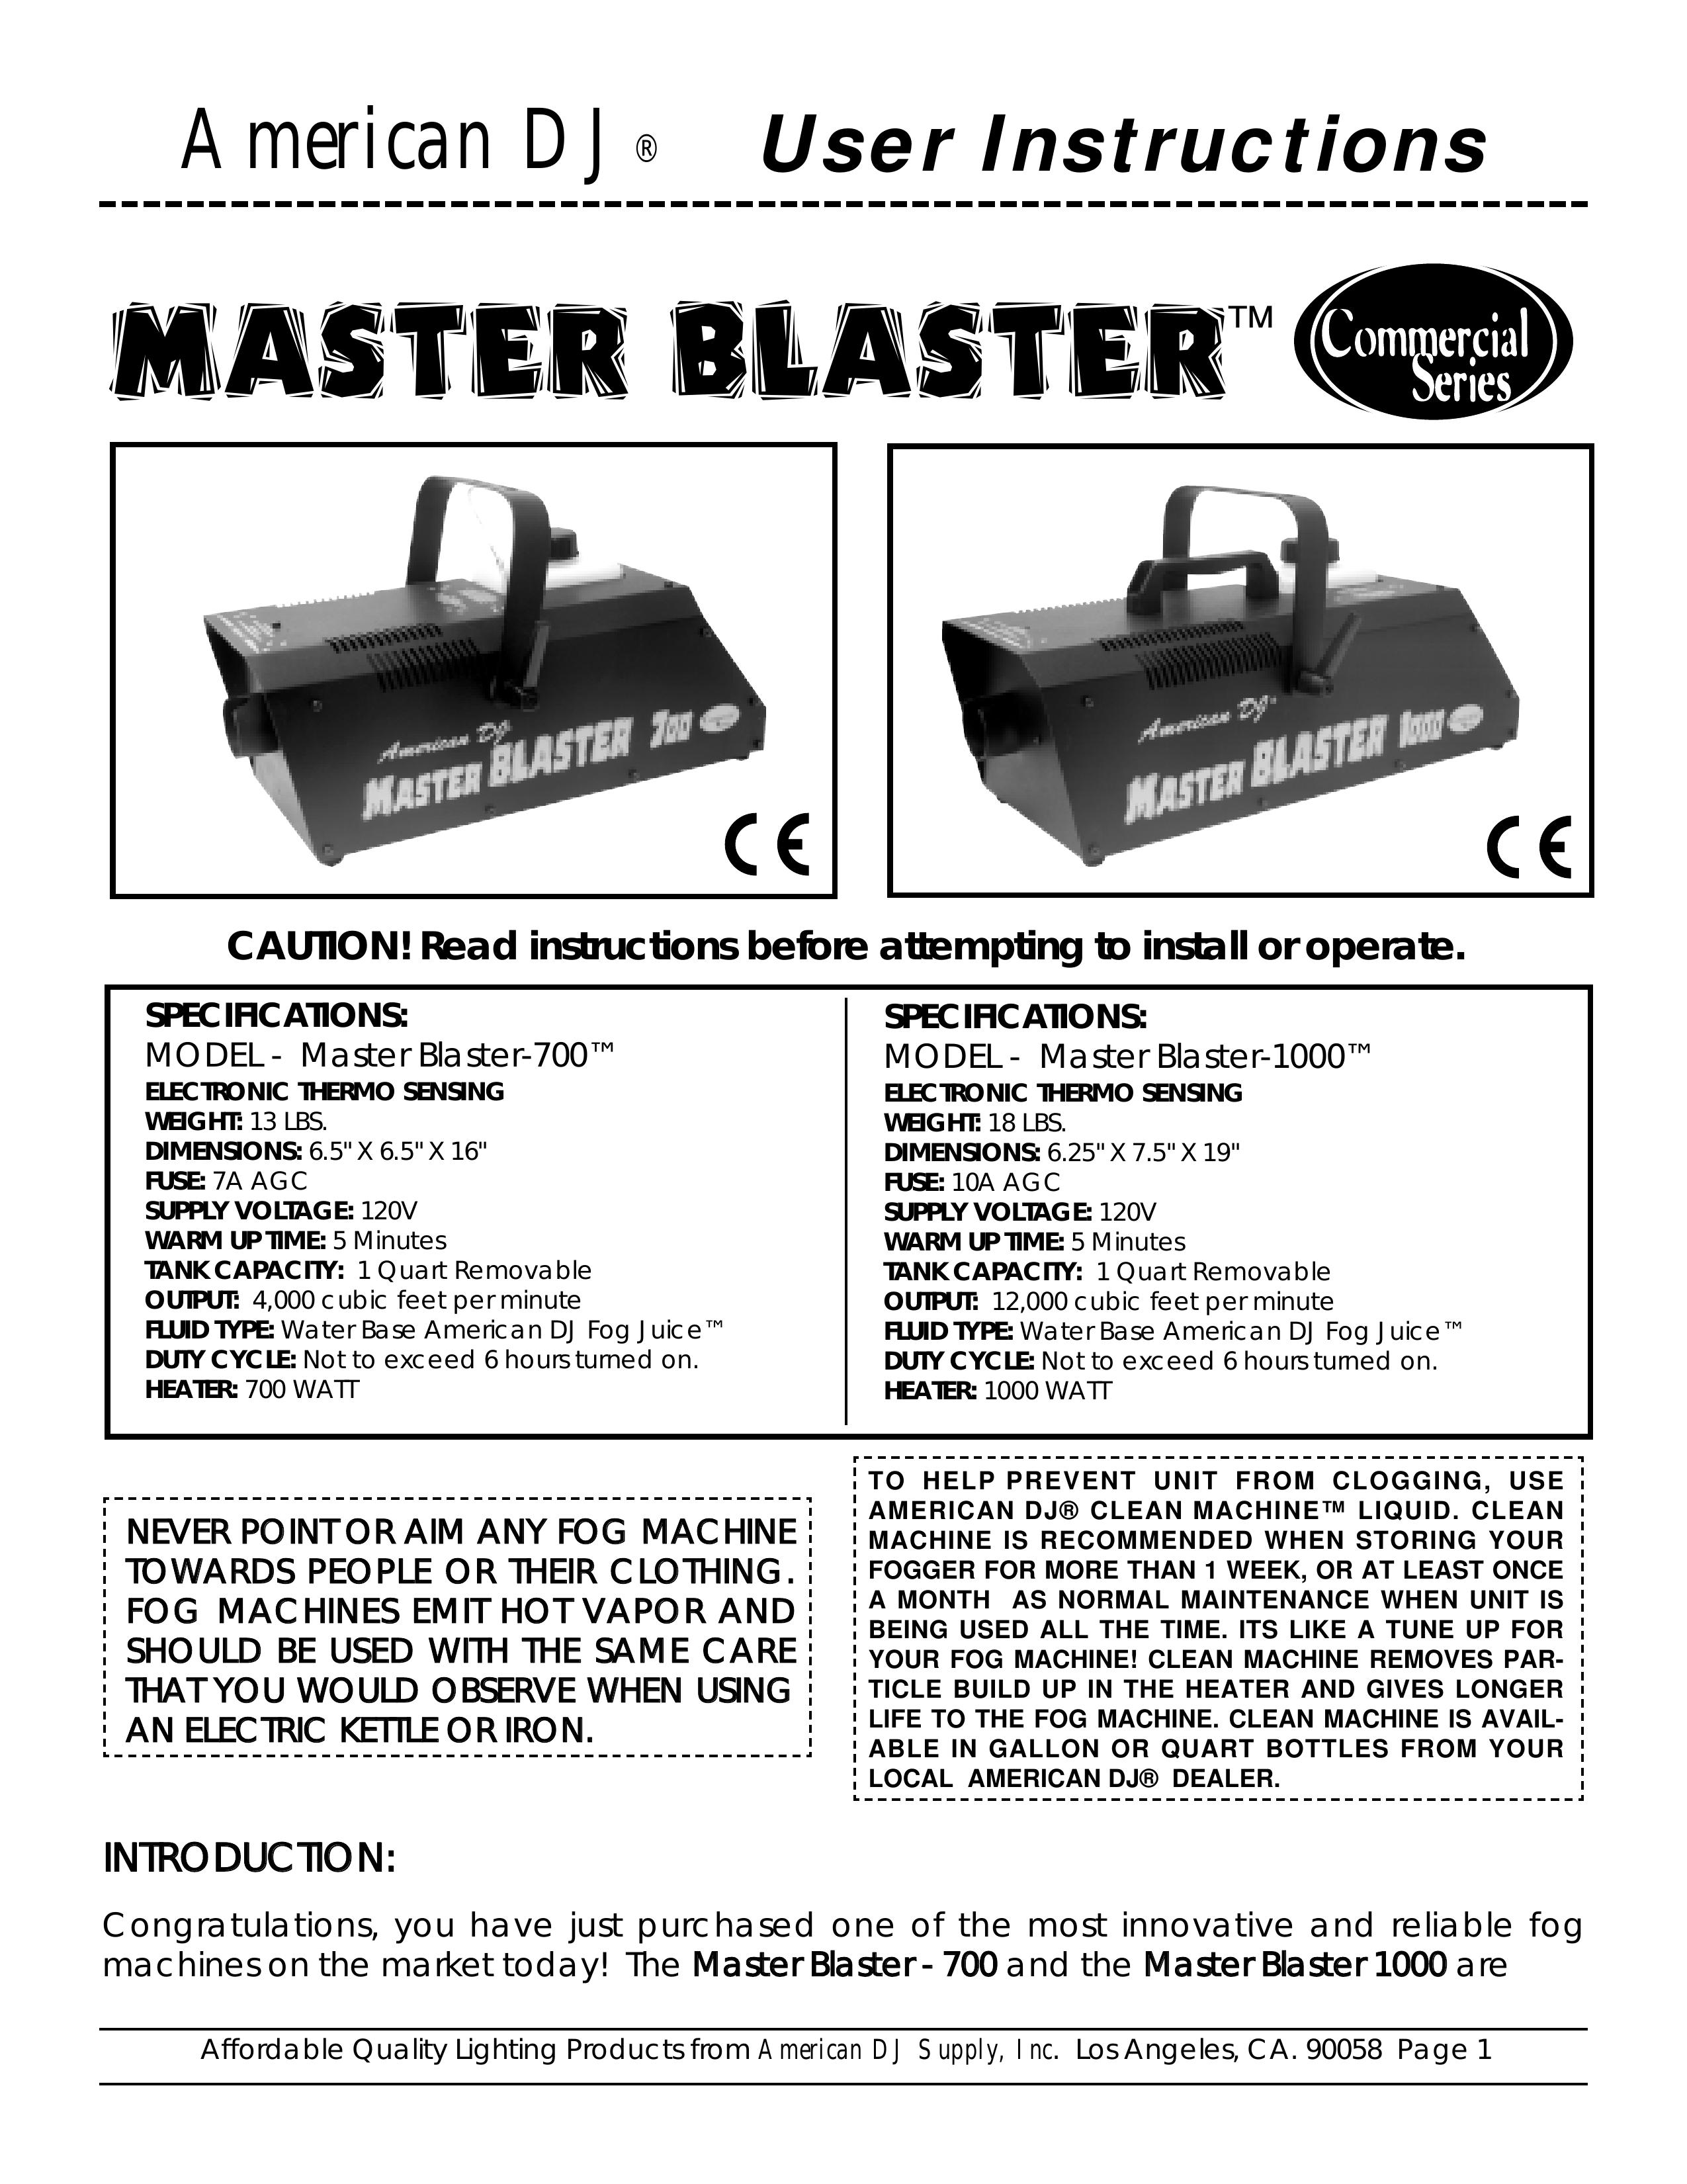 American DJ Master Blaster DJ Equipment User Manual